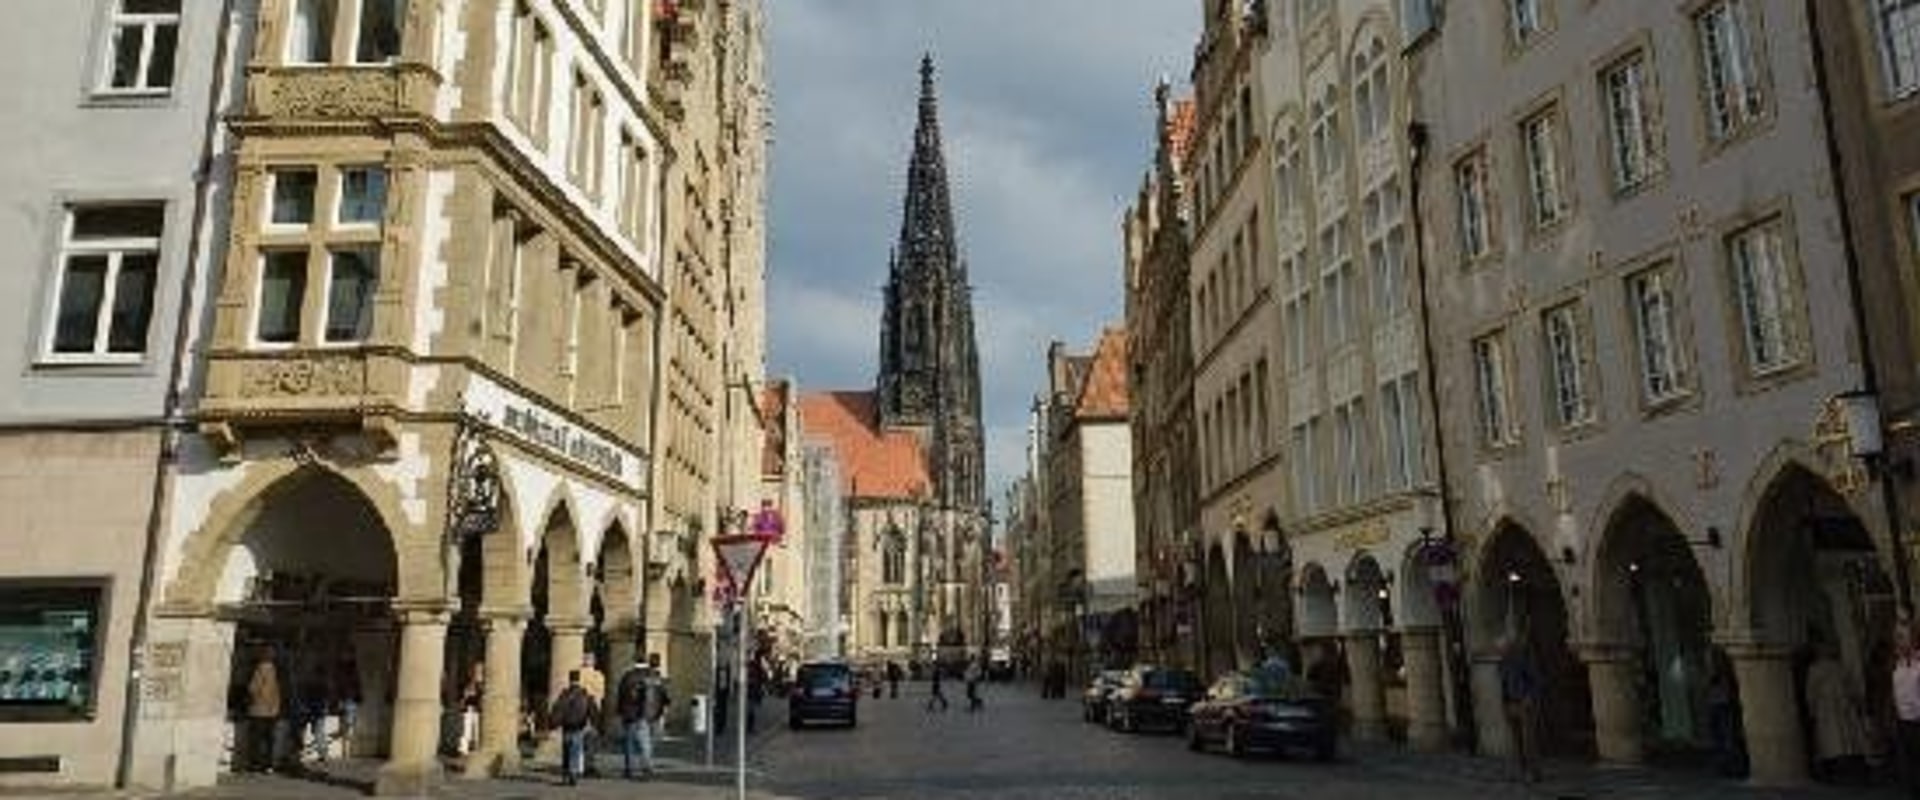 What Makes Münster a Unique City?